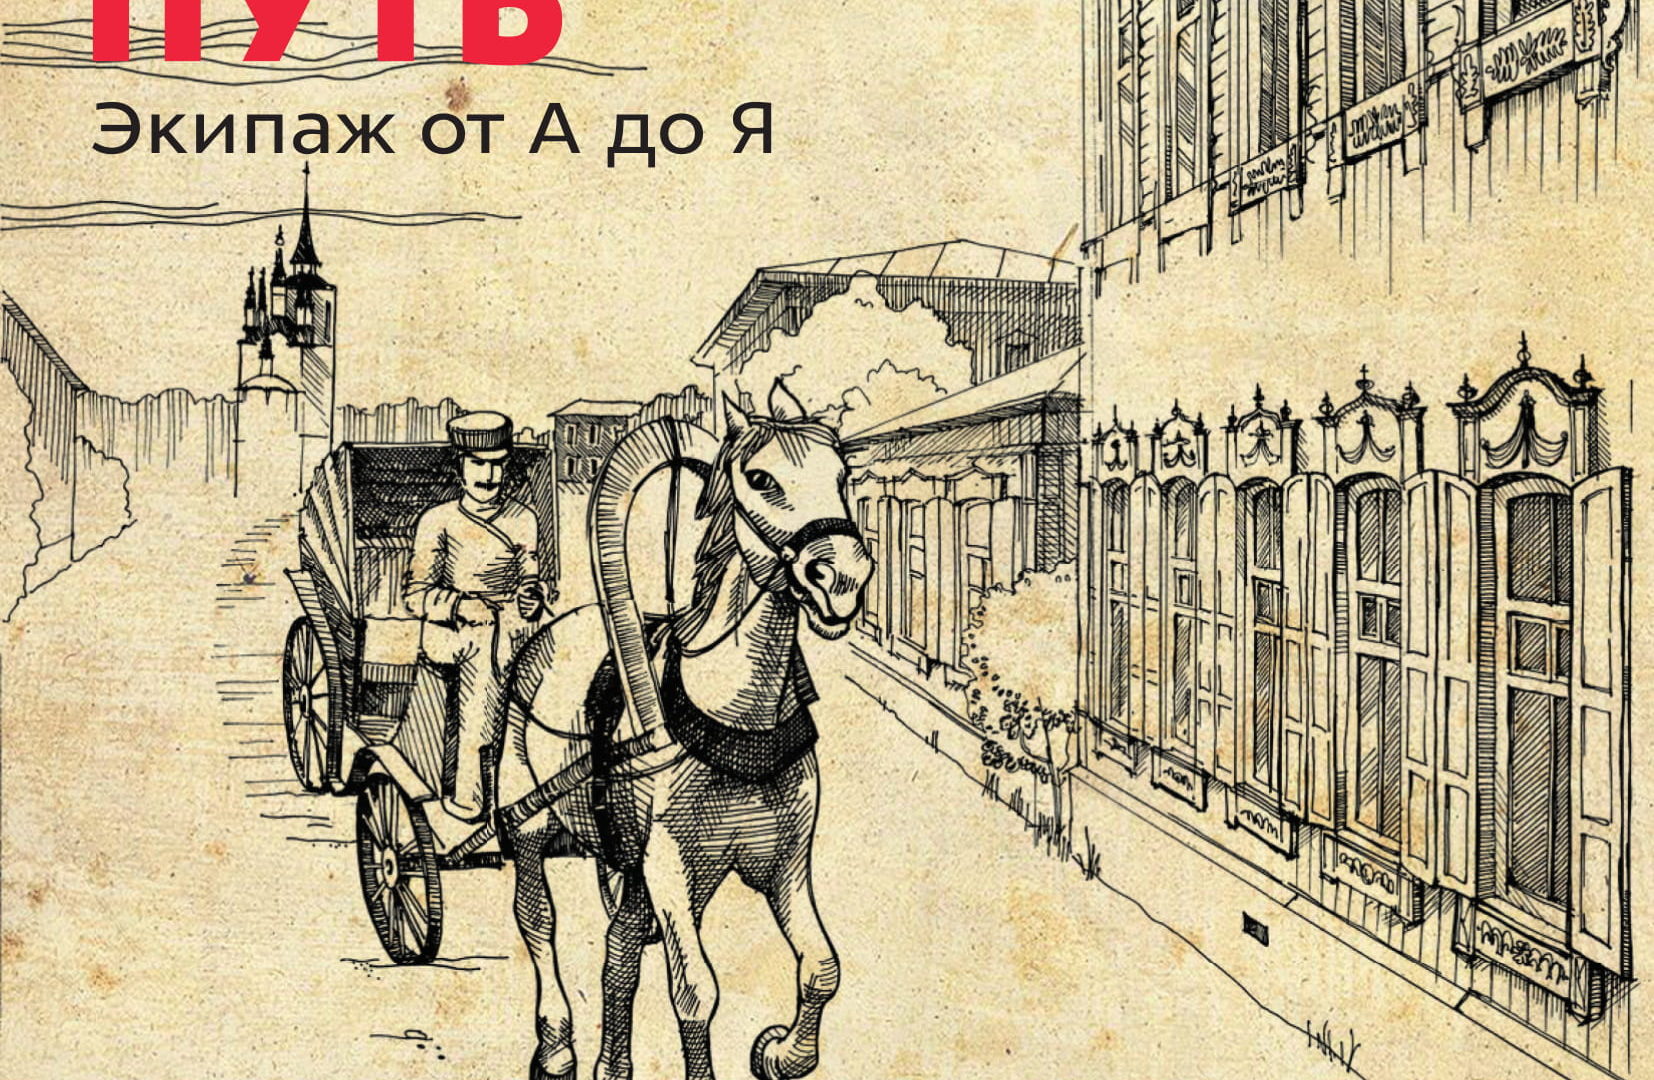 Анонс выставок и экскурсий от Первого музея славянской мифологии. 20 и 21 июля.